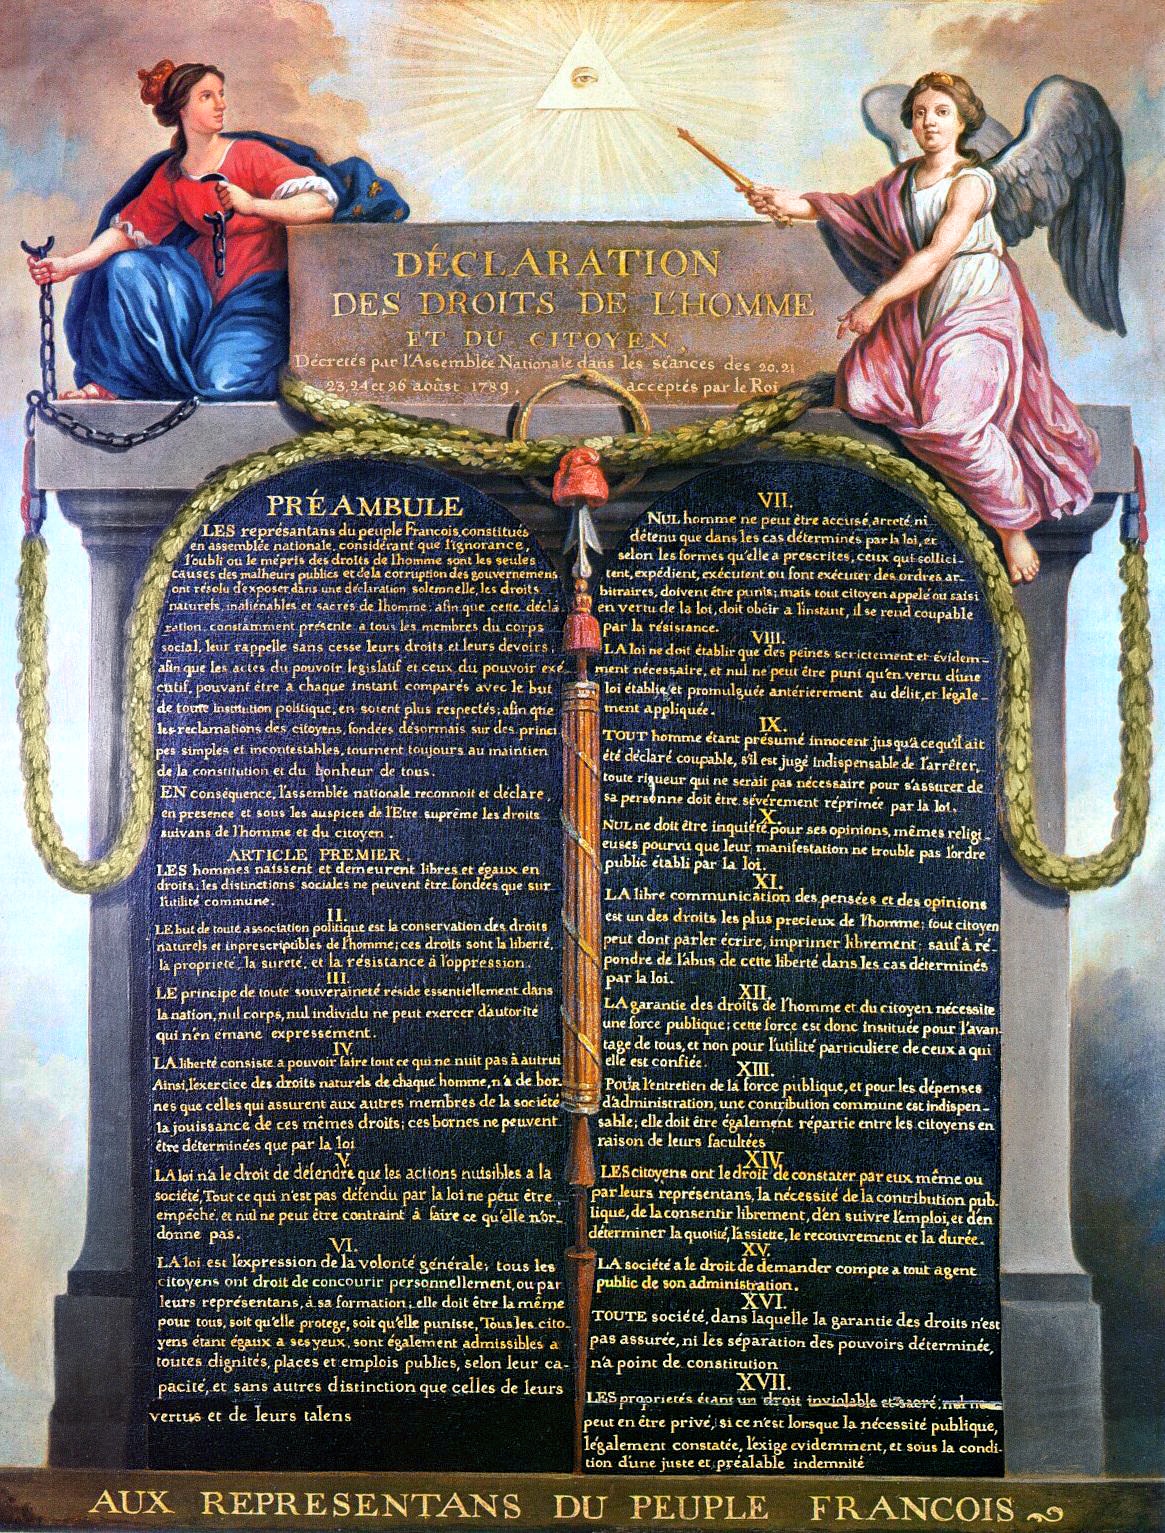 Erklæringen om menneskenes og borgernes rettigheter fra 1789. Denne erklæringen var verdens første generelle erklæring om alle menneskers rettigheter. Dessverre ble den satt til side allerede under jakobinernes terrovelde 1793-94.